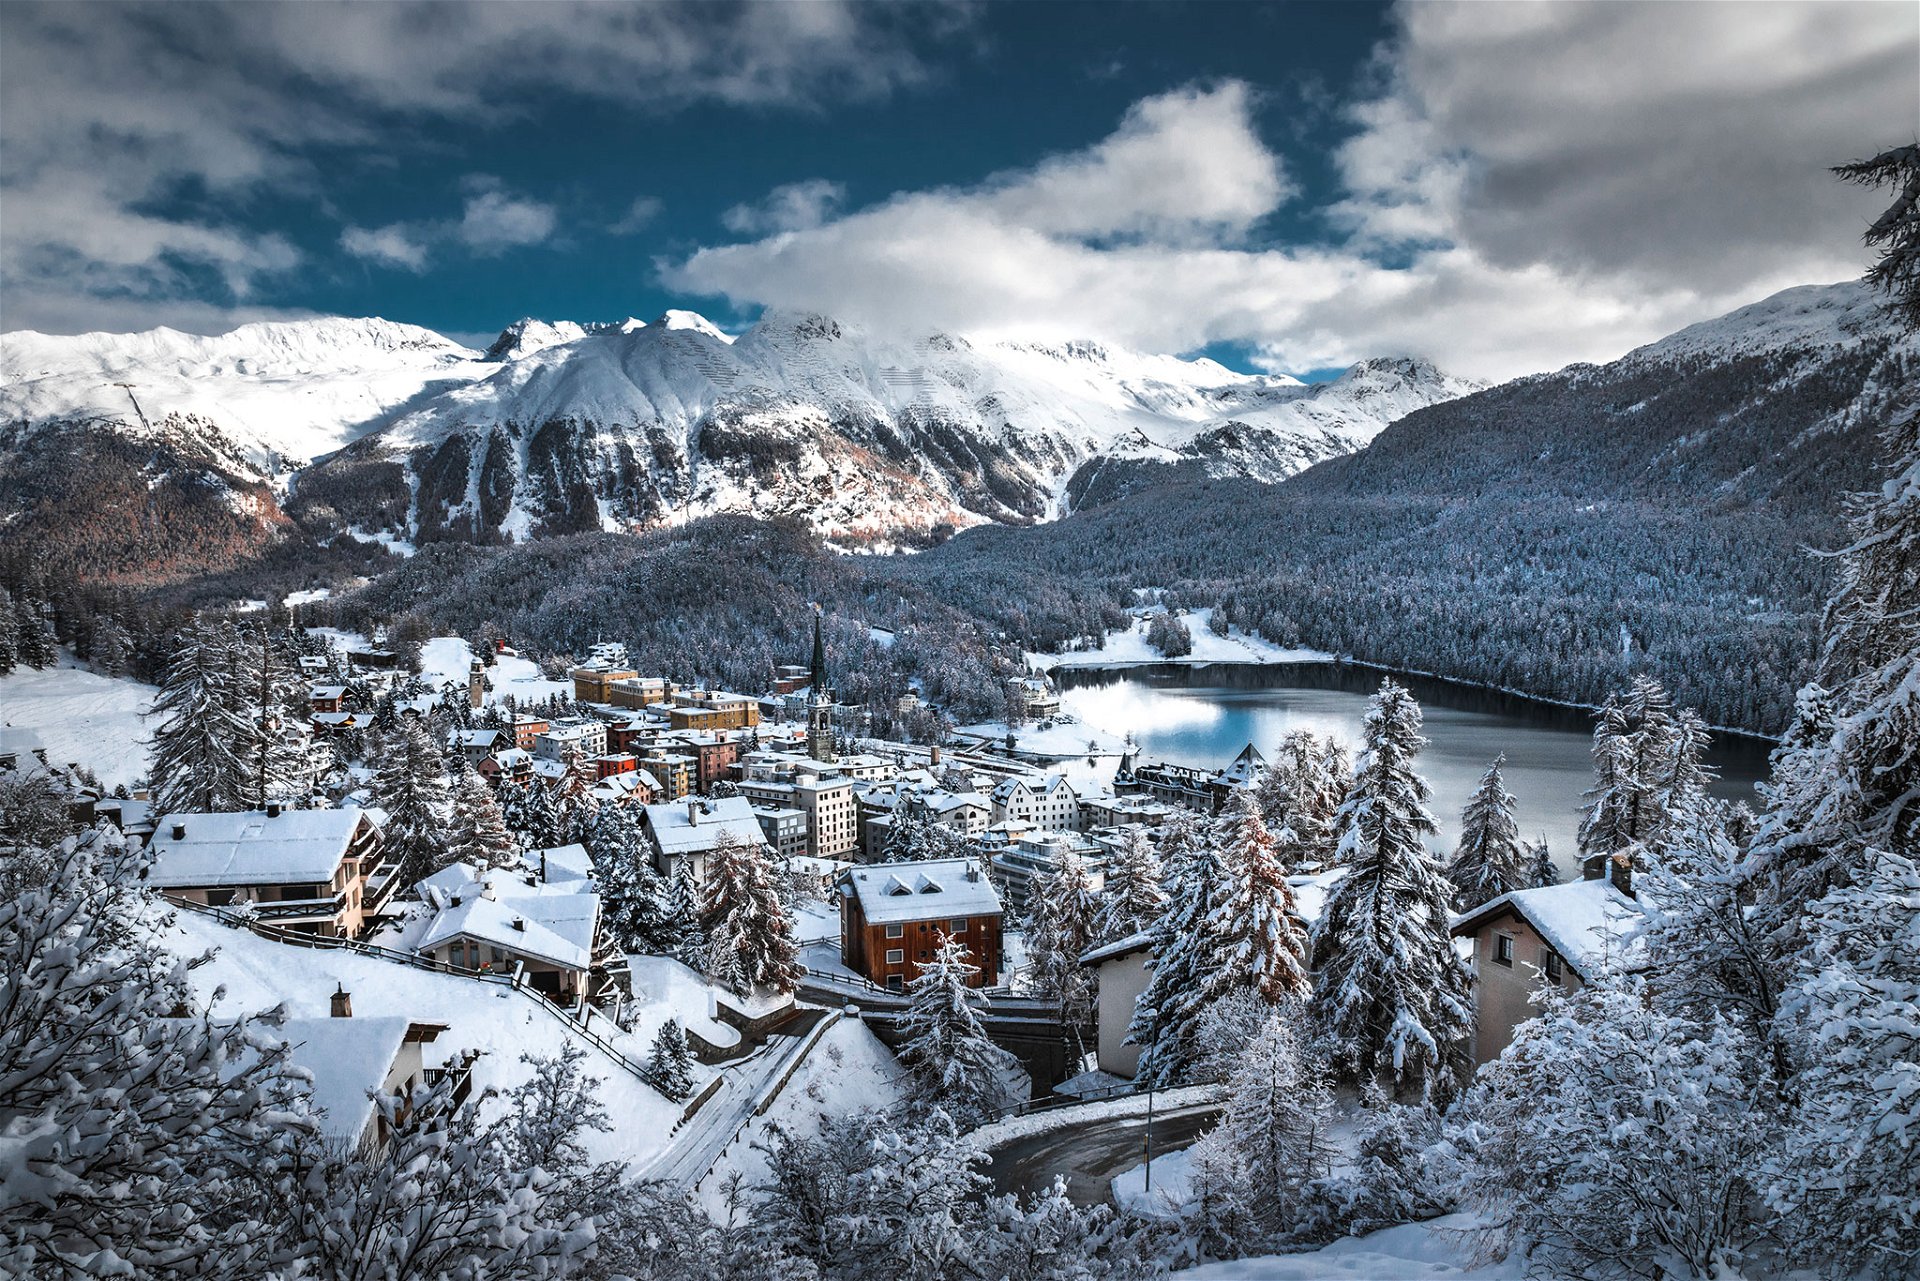 Der luxuriöse alpine Ferienort punktet weltweit mit den höchsten Preisen in den Bergen. Exklusivität hat ihren Wert.